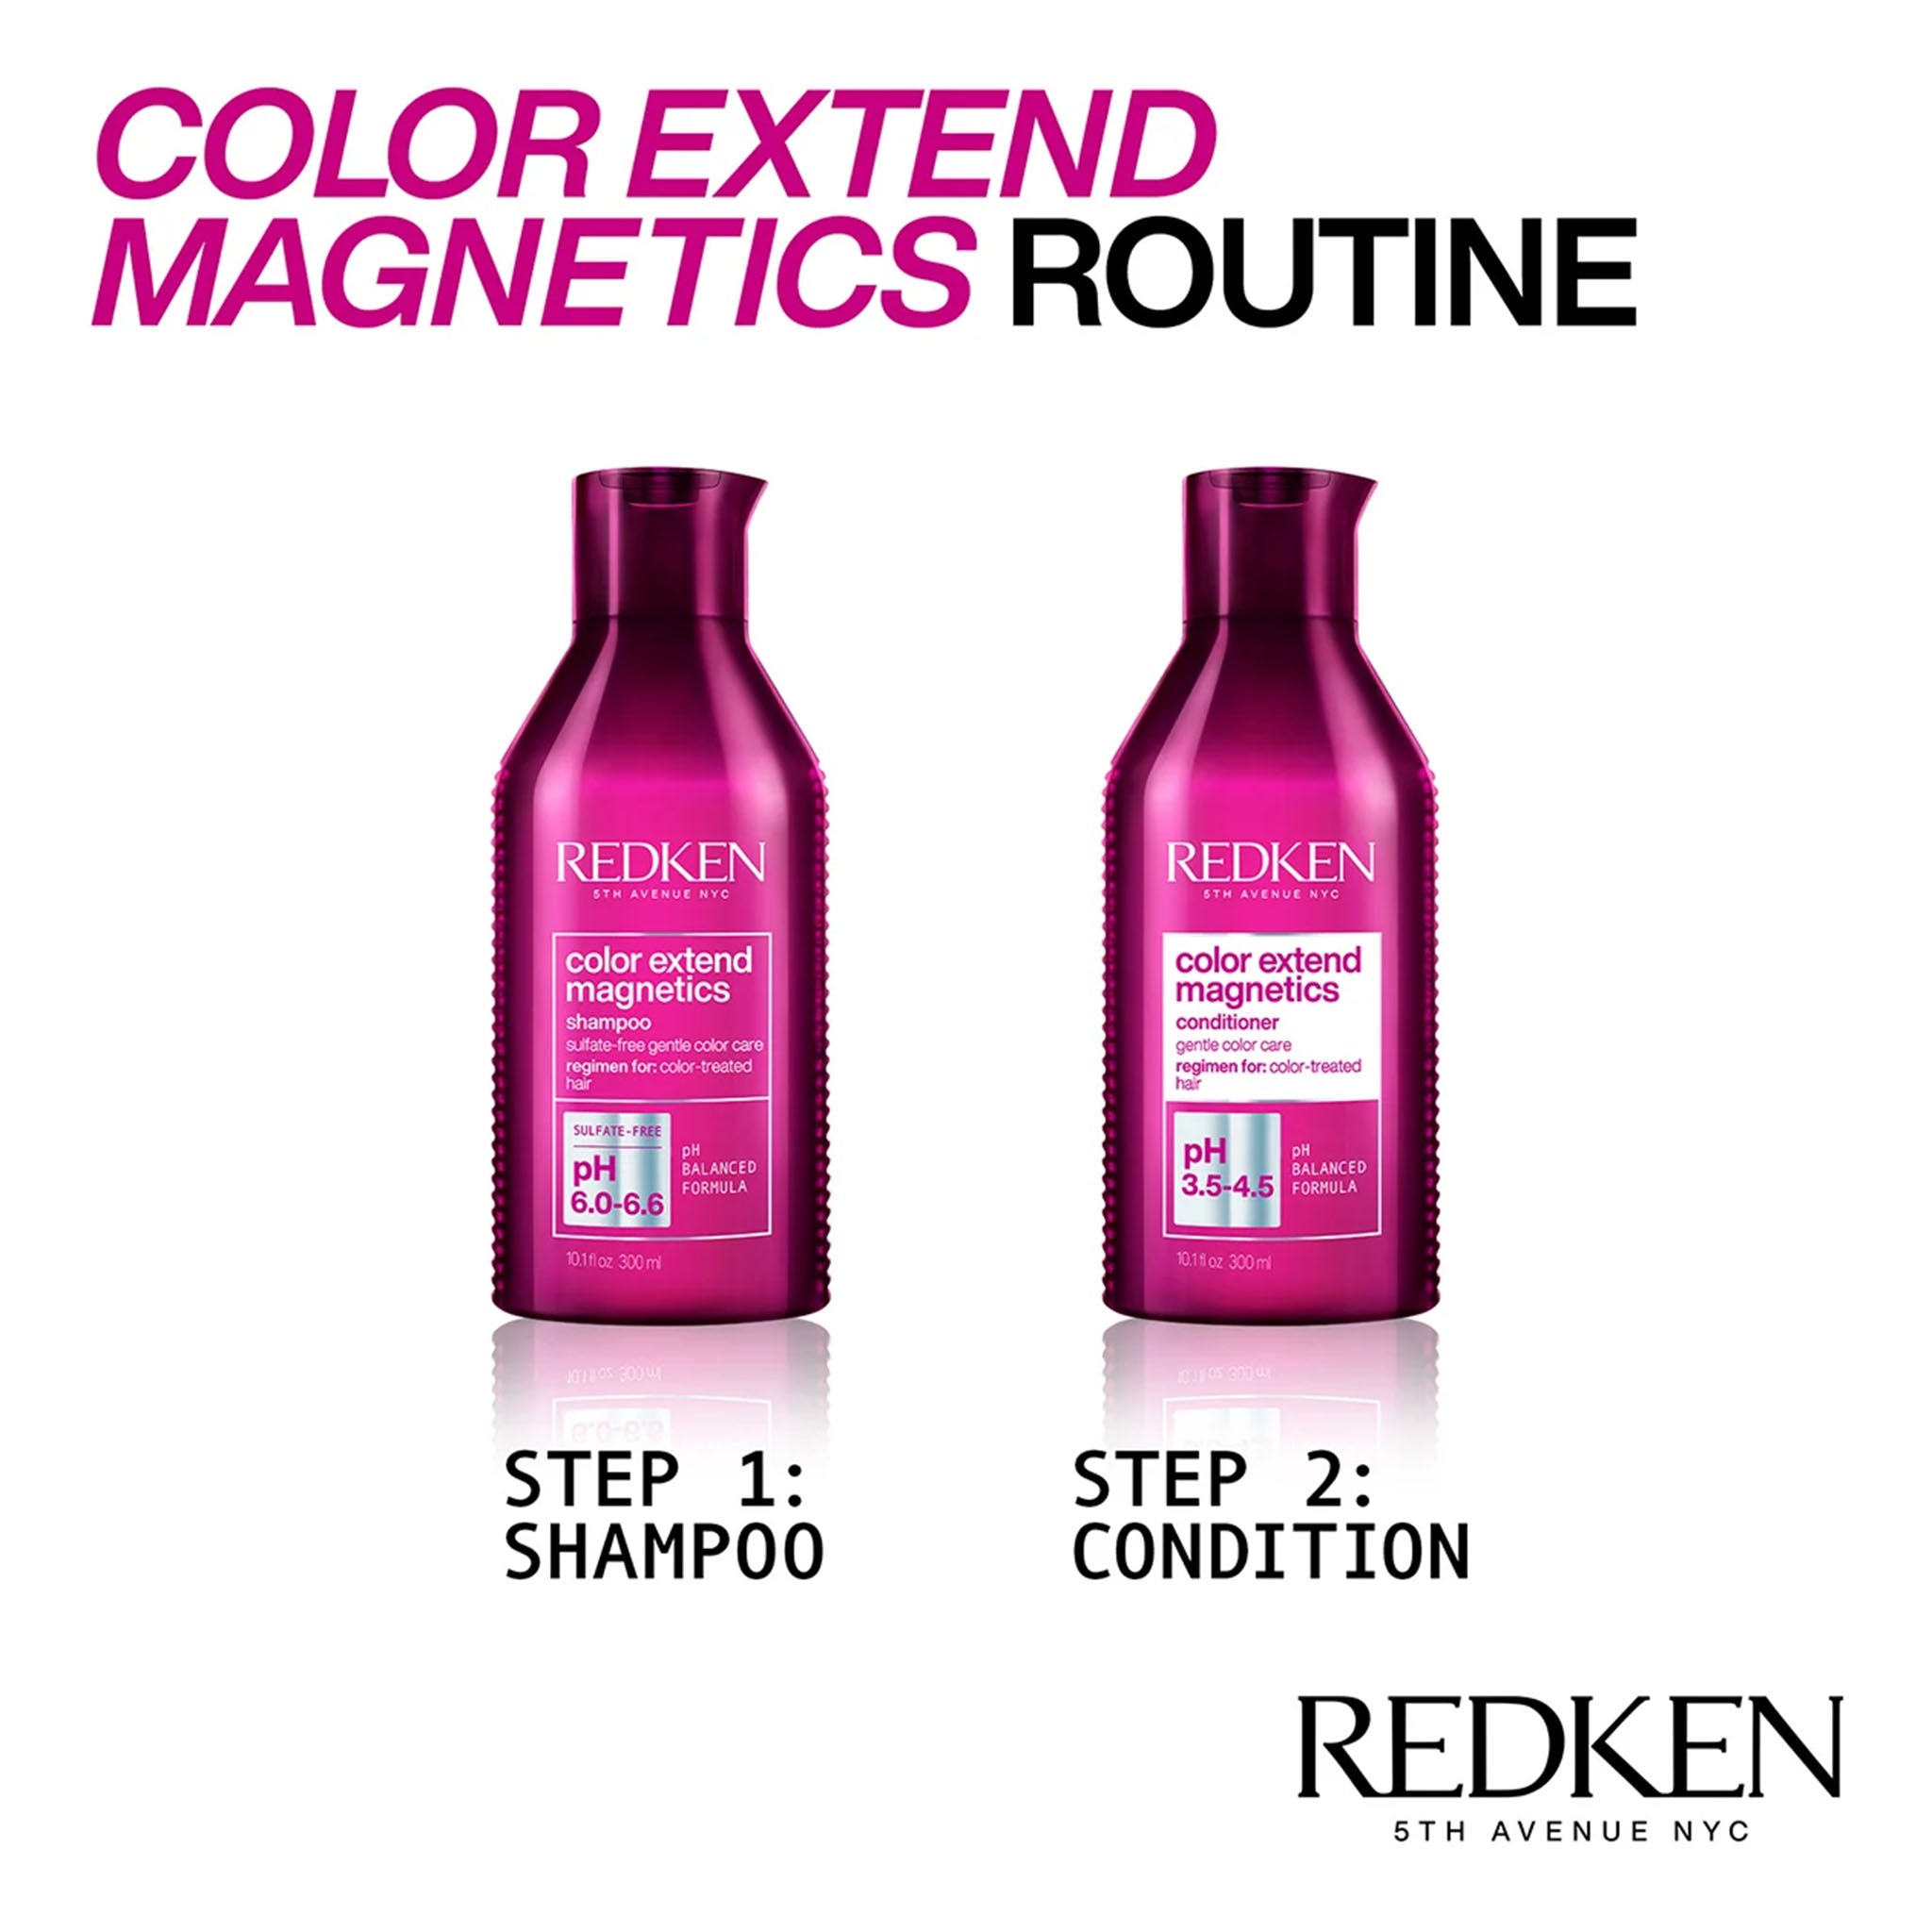 Redken. Shampoing Color Extend Magnetics - 300ml - Concept C. Shop